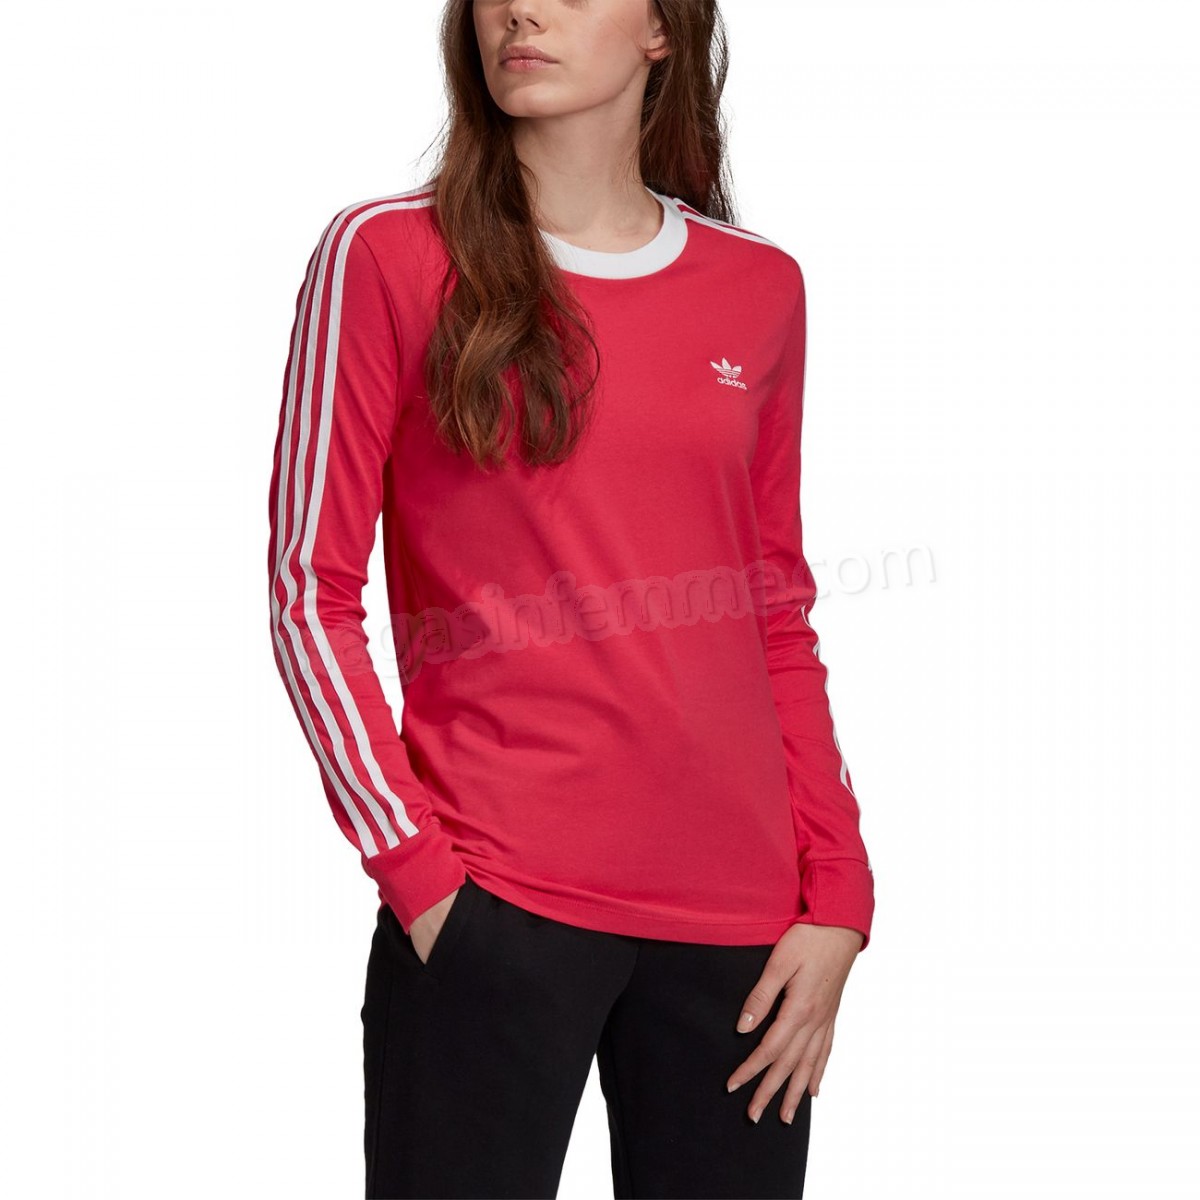 Adidas Originals-Mode- Lifestyle femme ADIDAS ORIGINALS T-shirt femme adidas Originals 3-Bandes en solde - -4